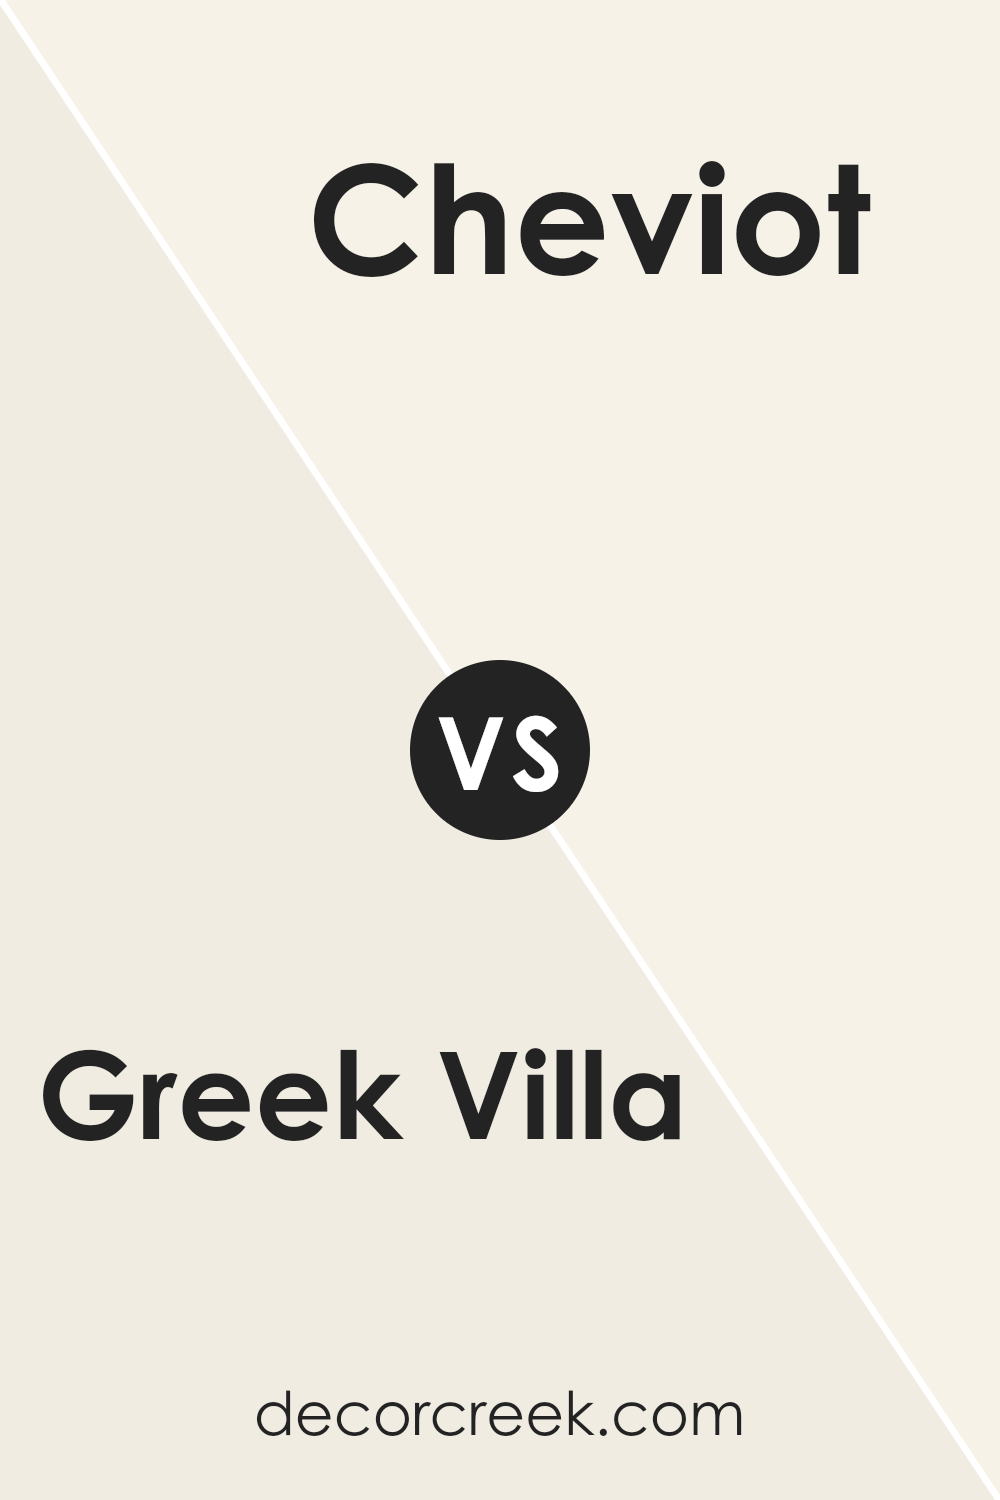 greek_villa_sw_7551_vs_cheviot_sw_9503